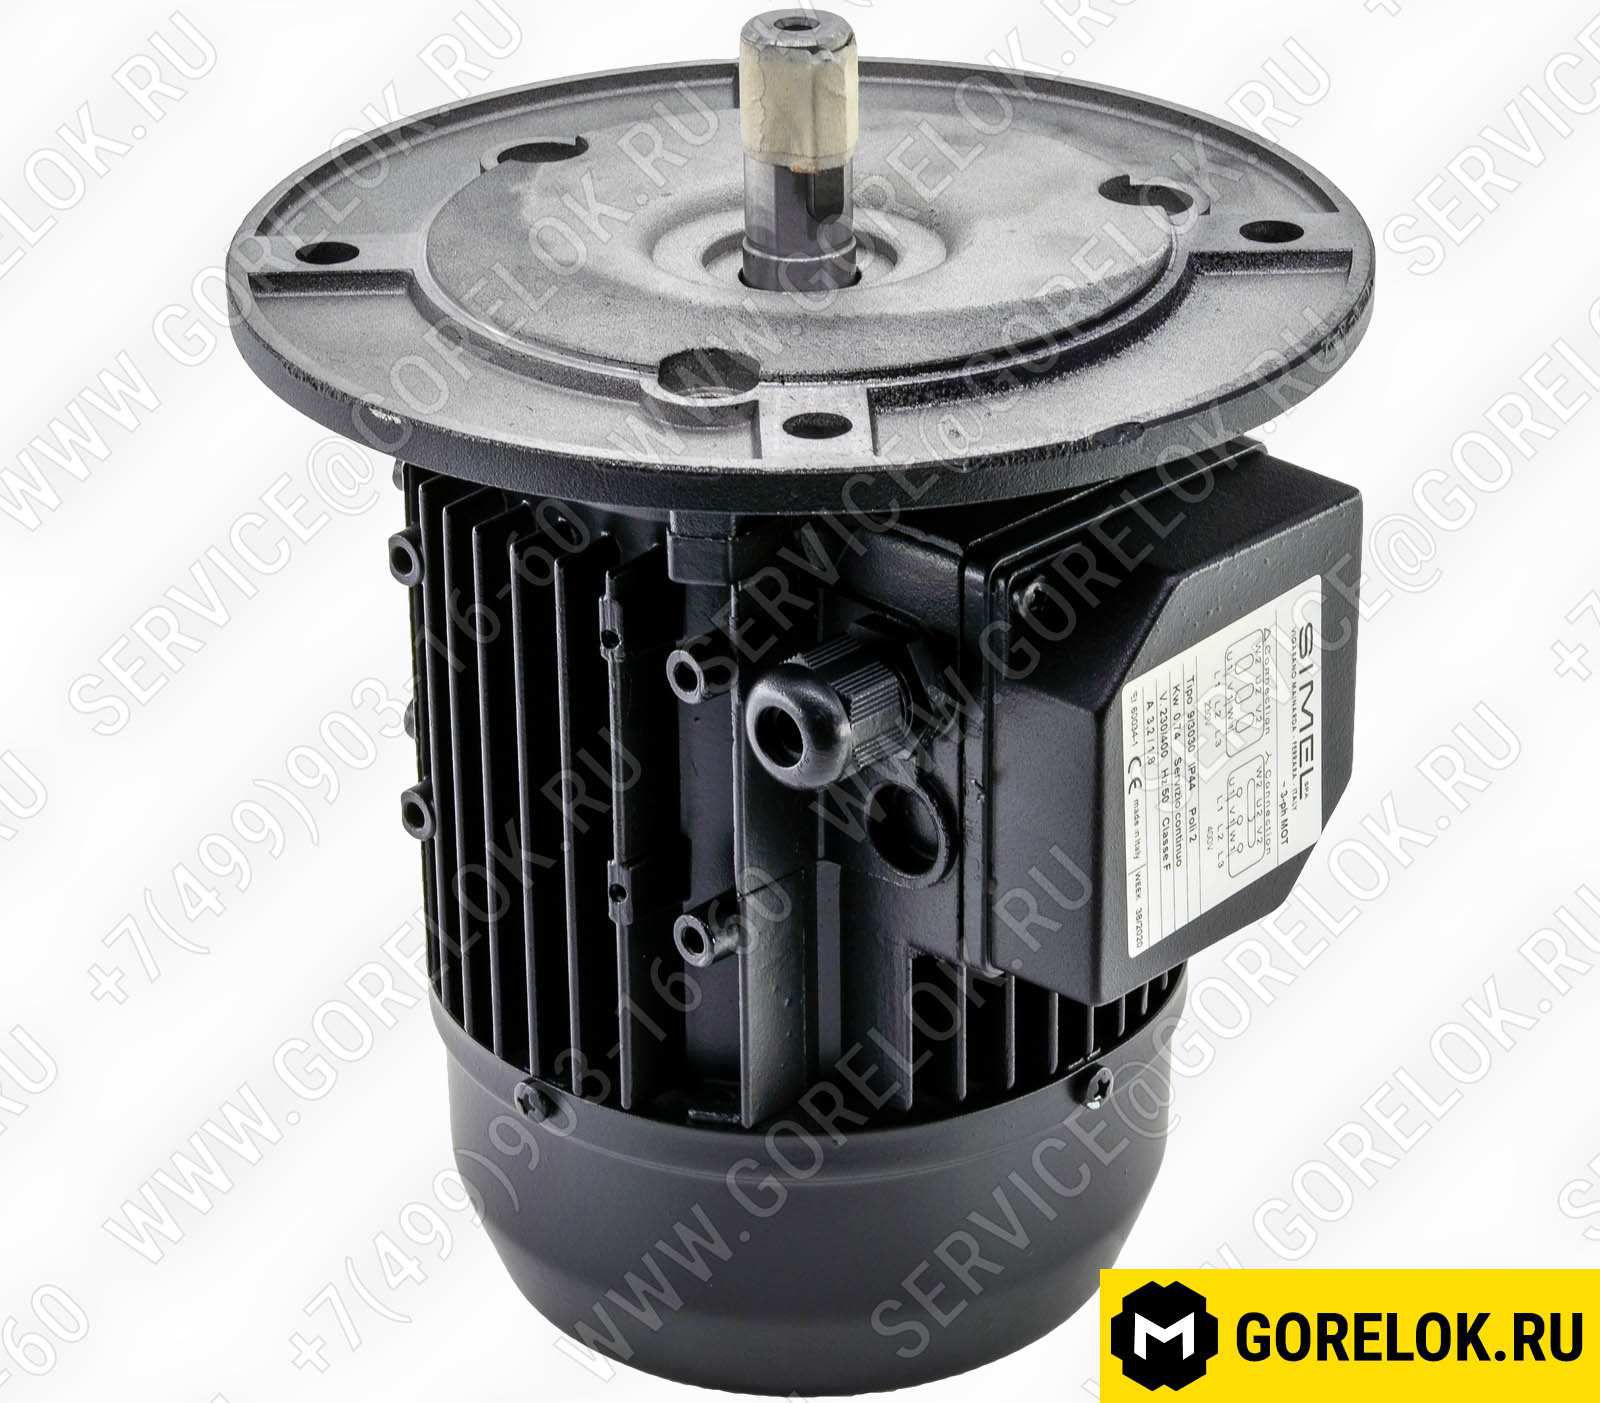 01134820 Жидкотопливные компоненты: Гибкий топливный шланг TUBOFLEX 3/4"X1200 FD/FG BI (BT 35PN-EFD)